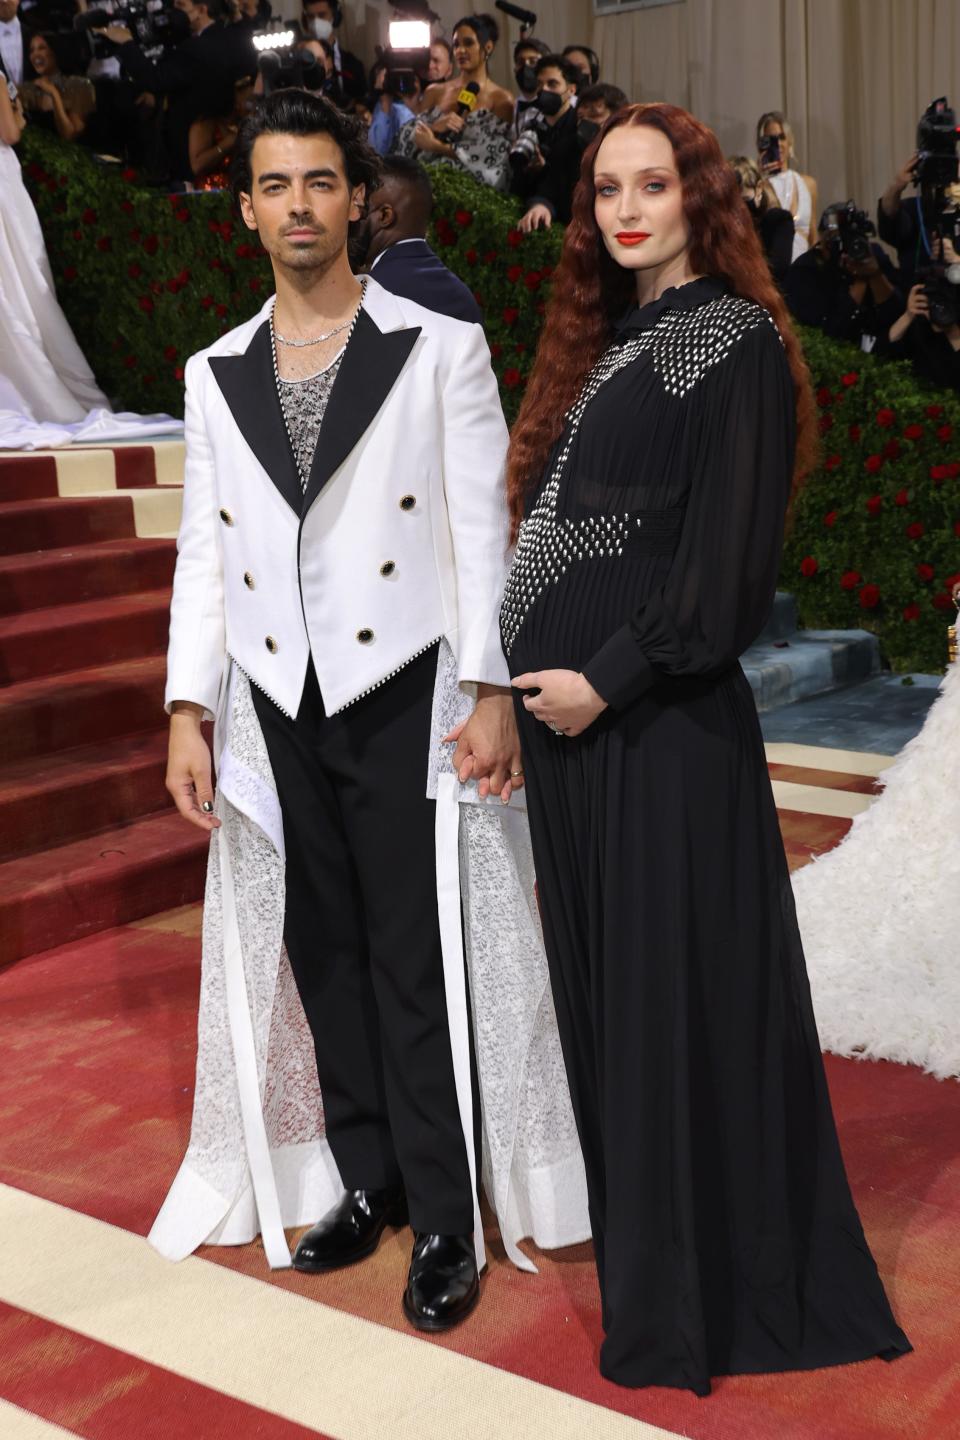 Joe Jonas and Sophie Turner attend 2022 Met Gala (Getty Images)